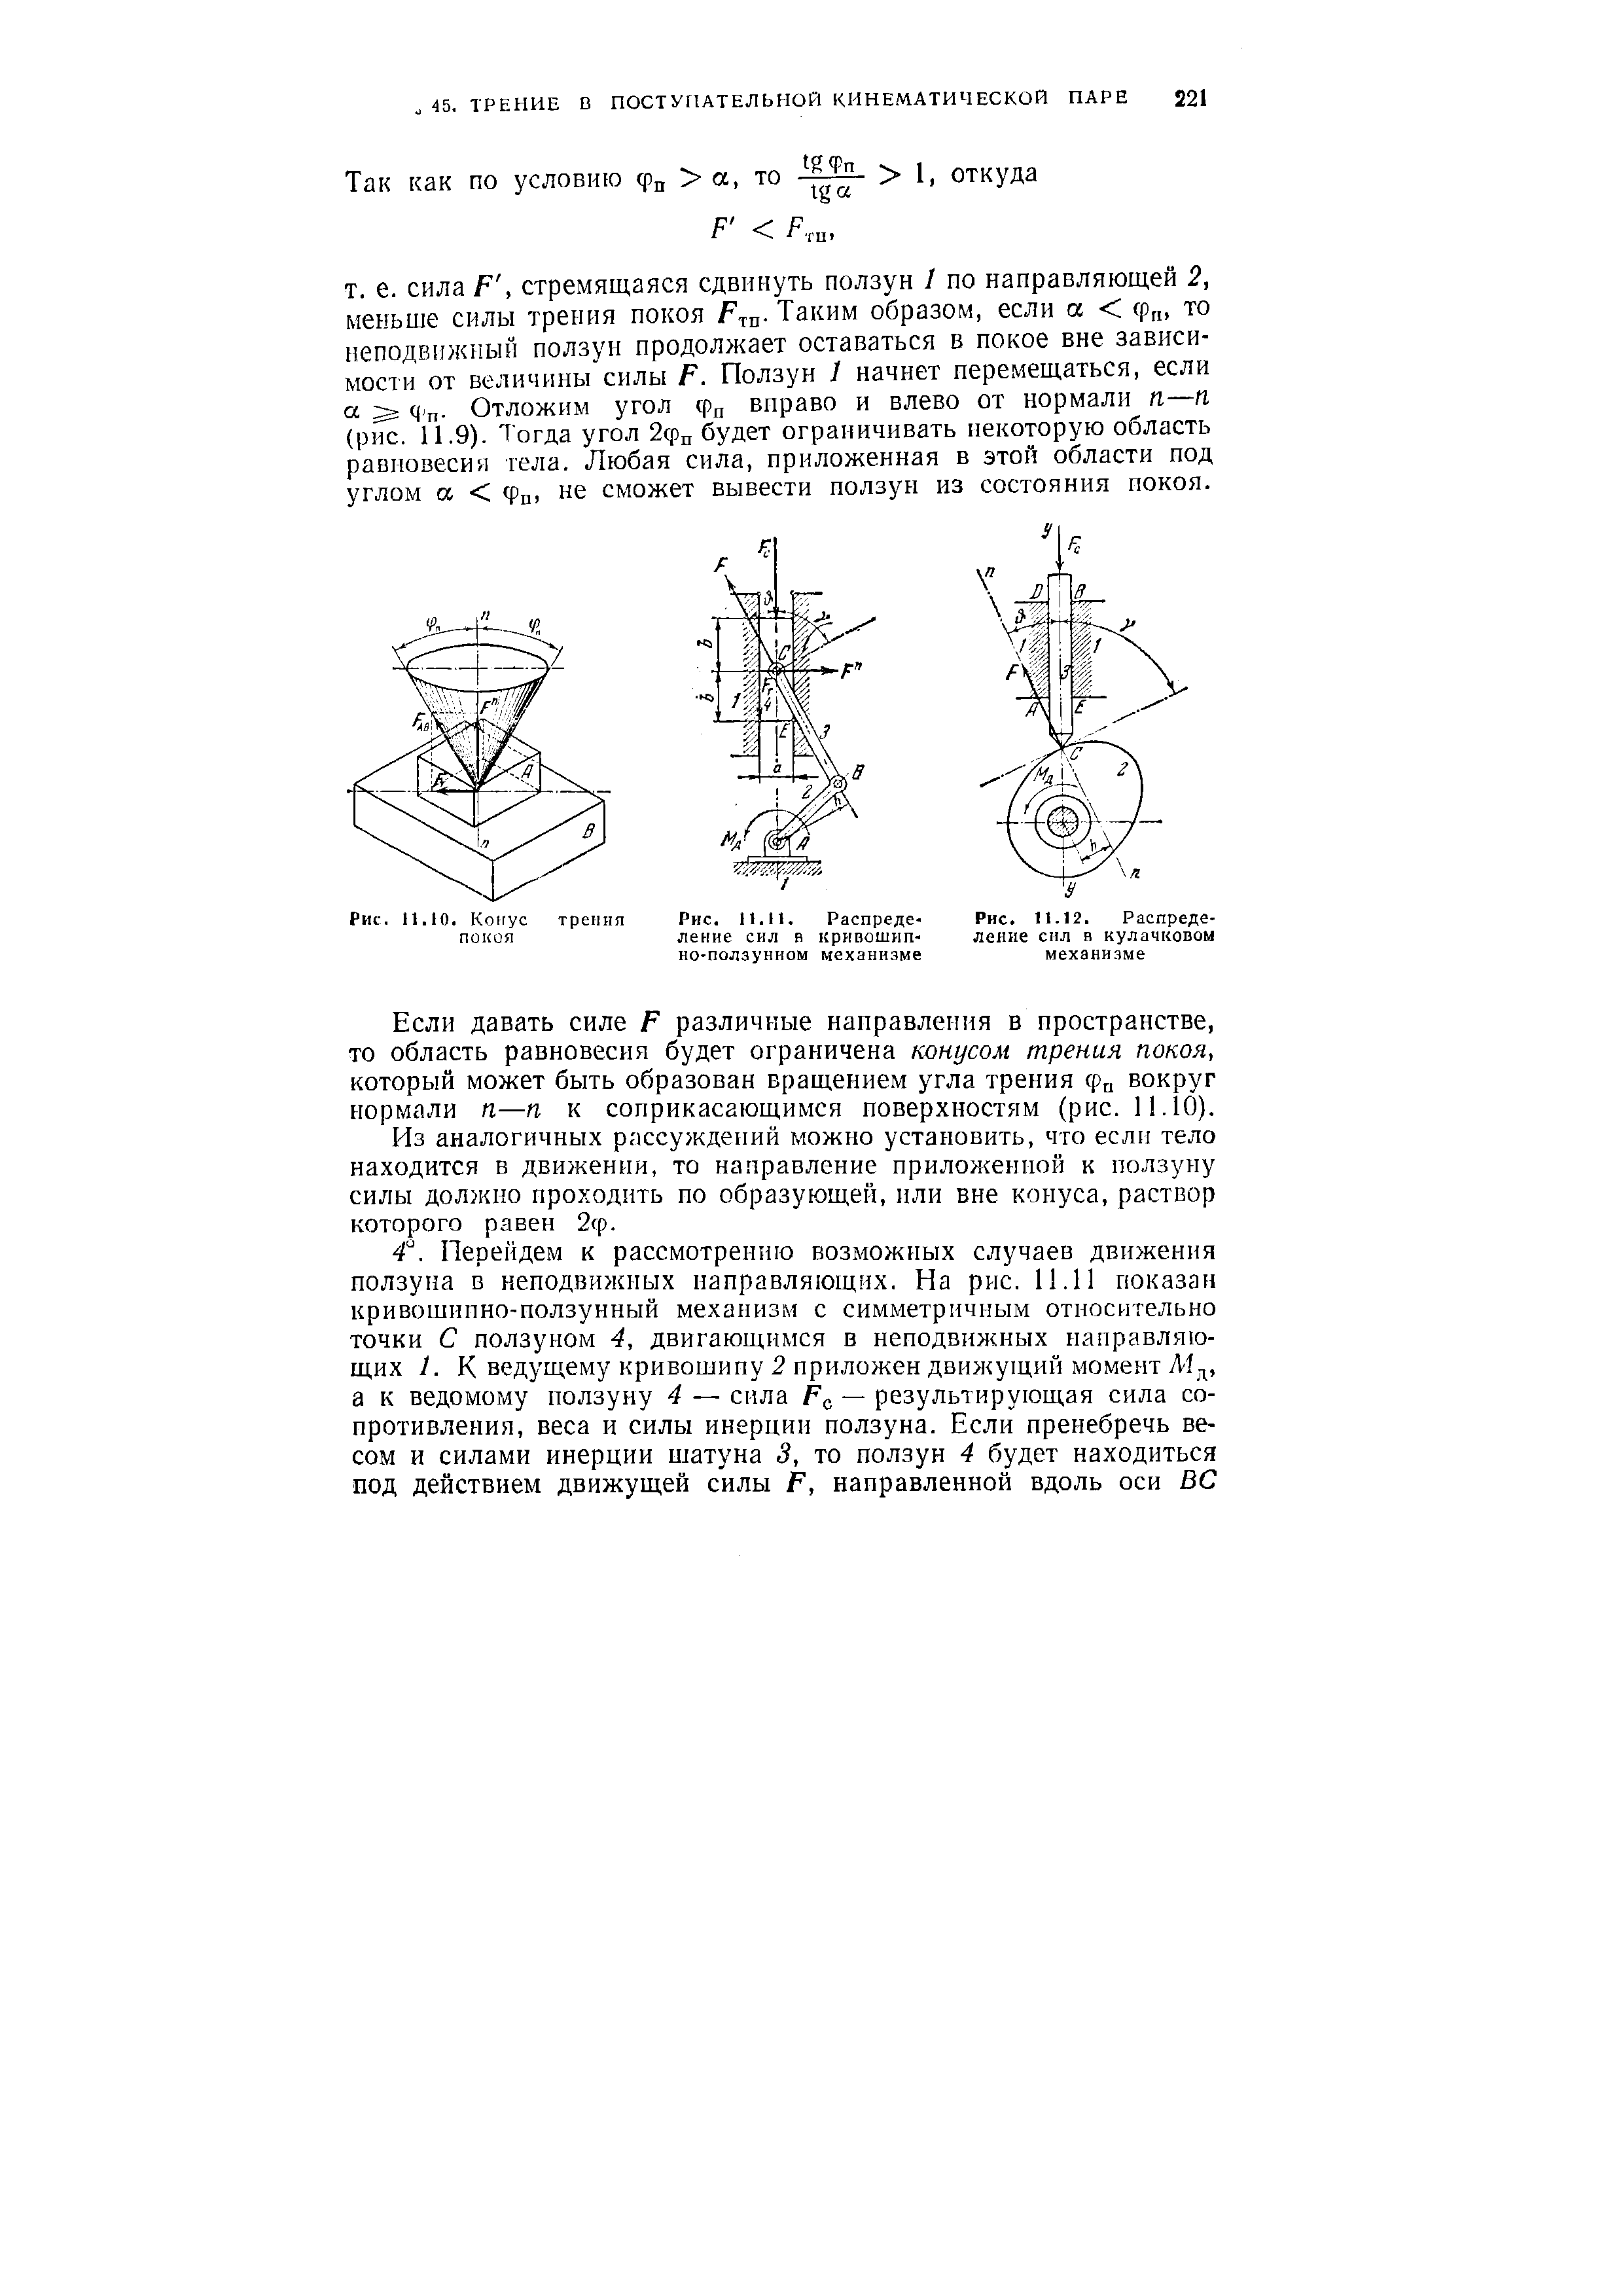 Рис. П.12. Распределение сил в кулачковом механизме
